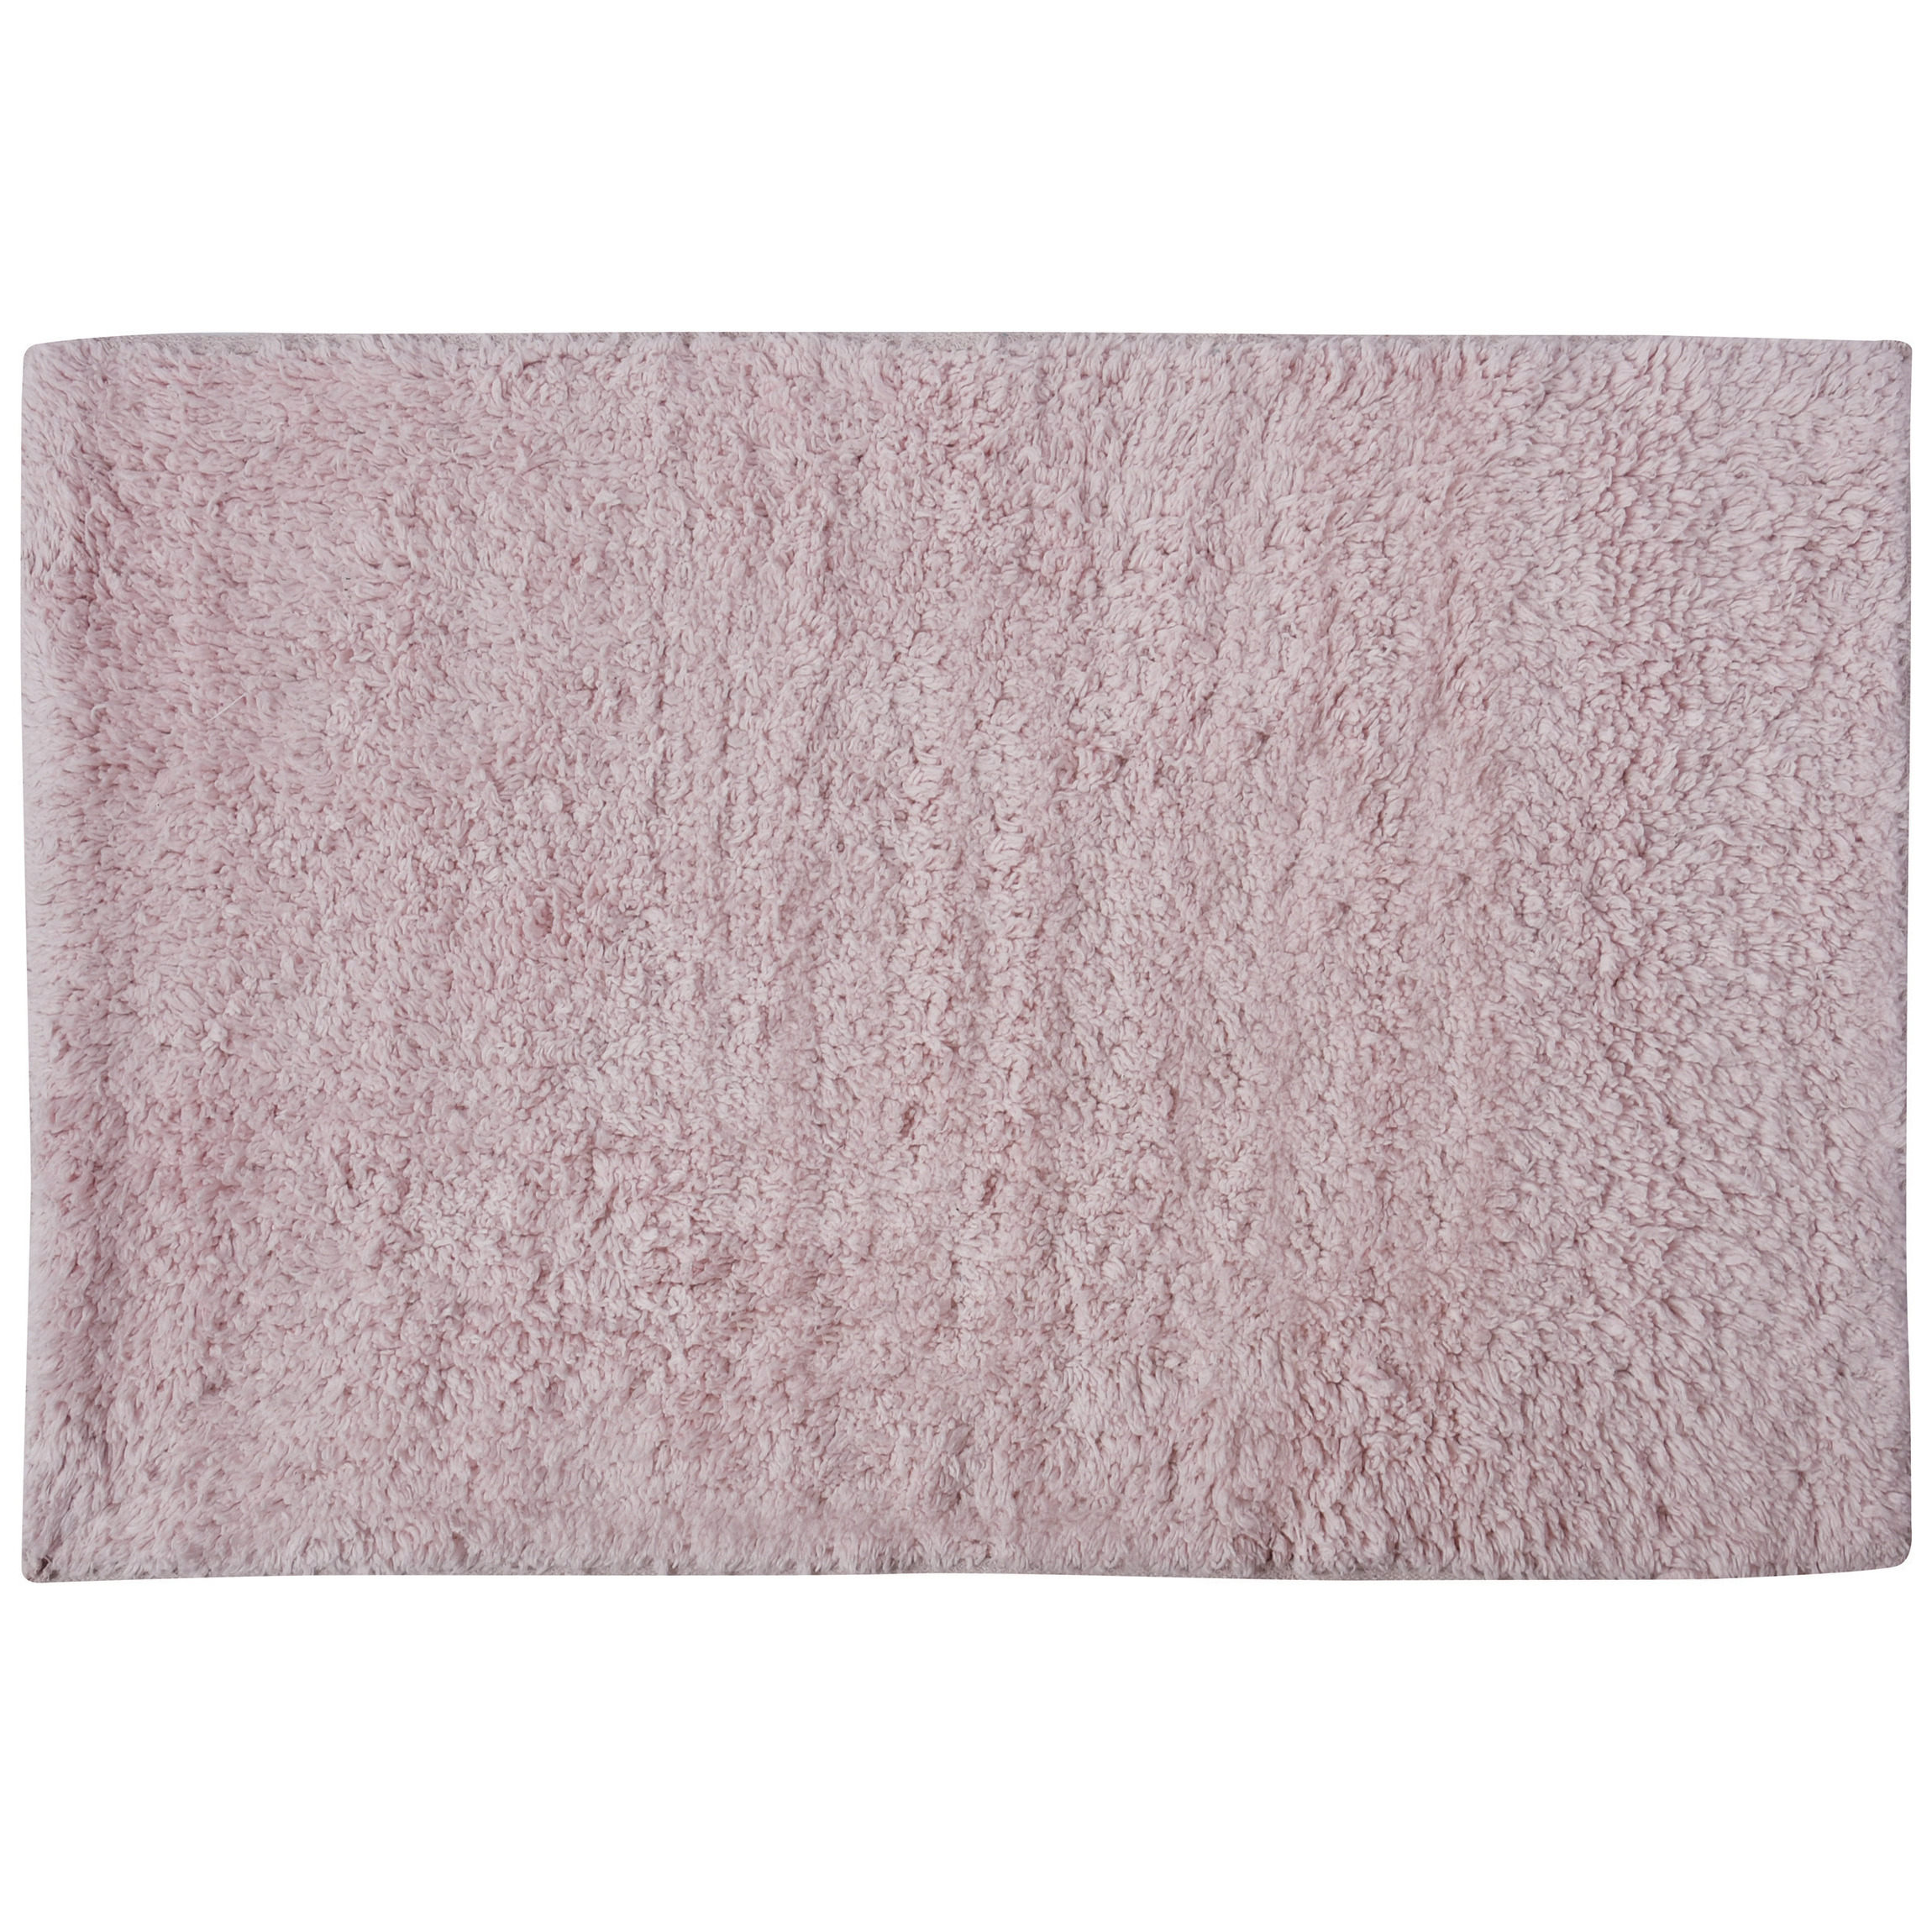 Badkamerkleedje-badmat voor op de vloer lichtroze 45 x 70 cm